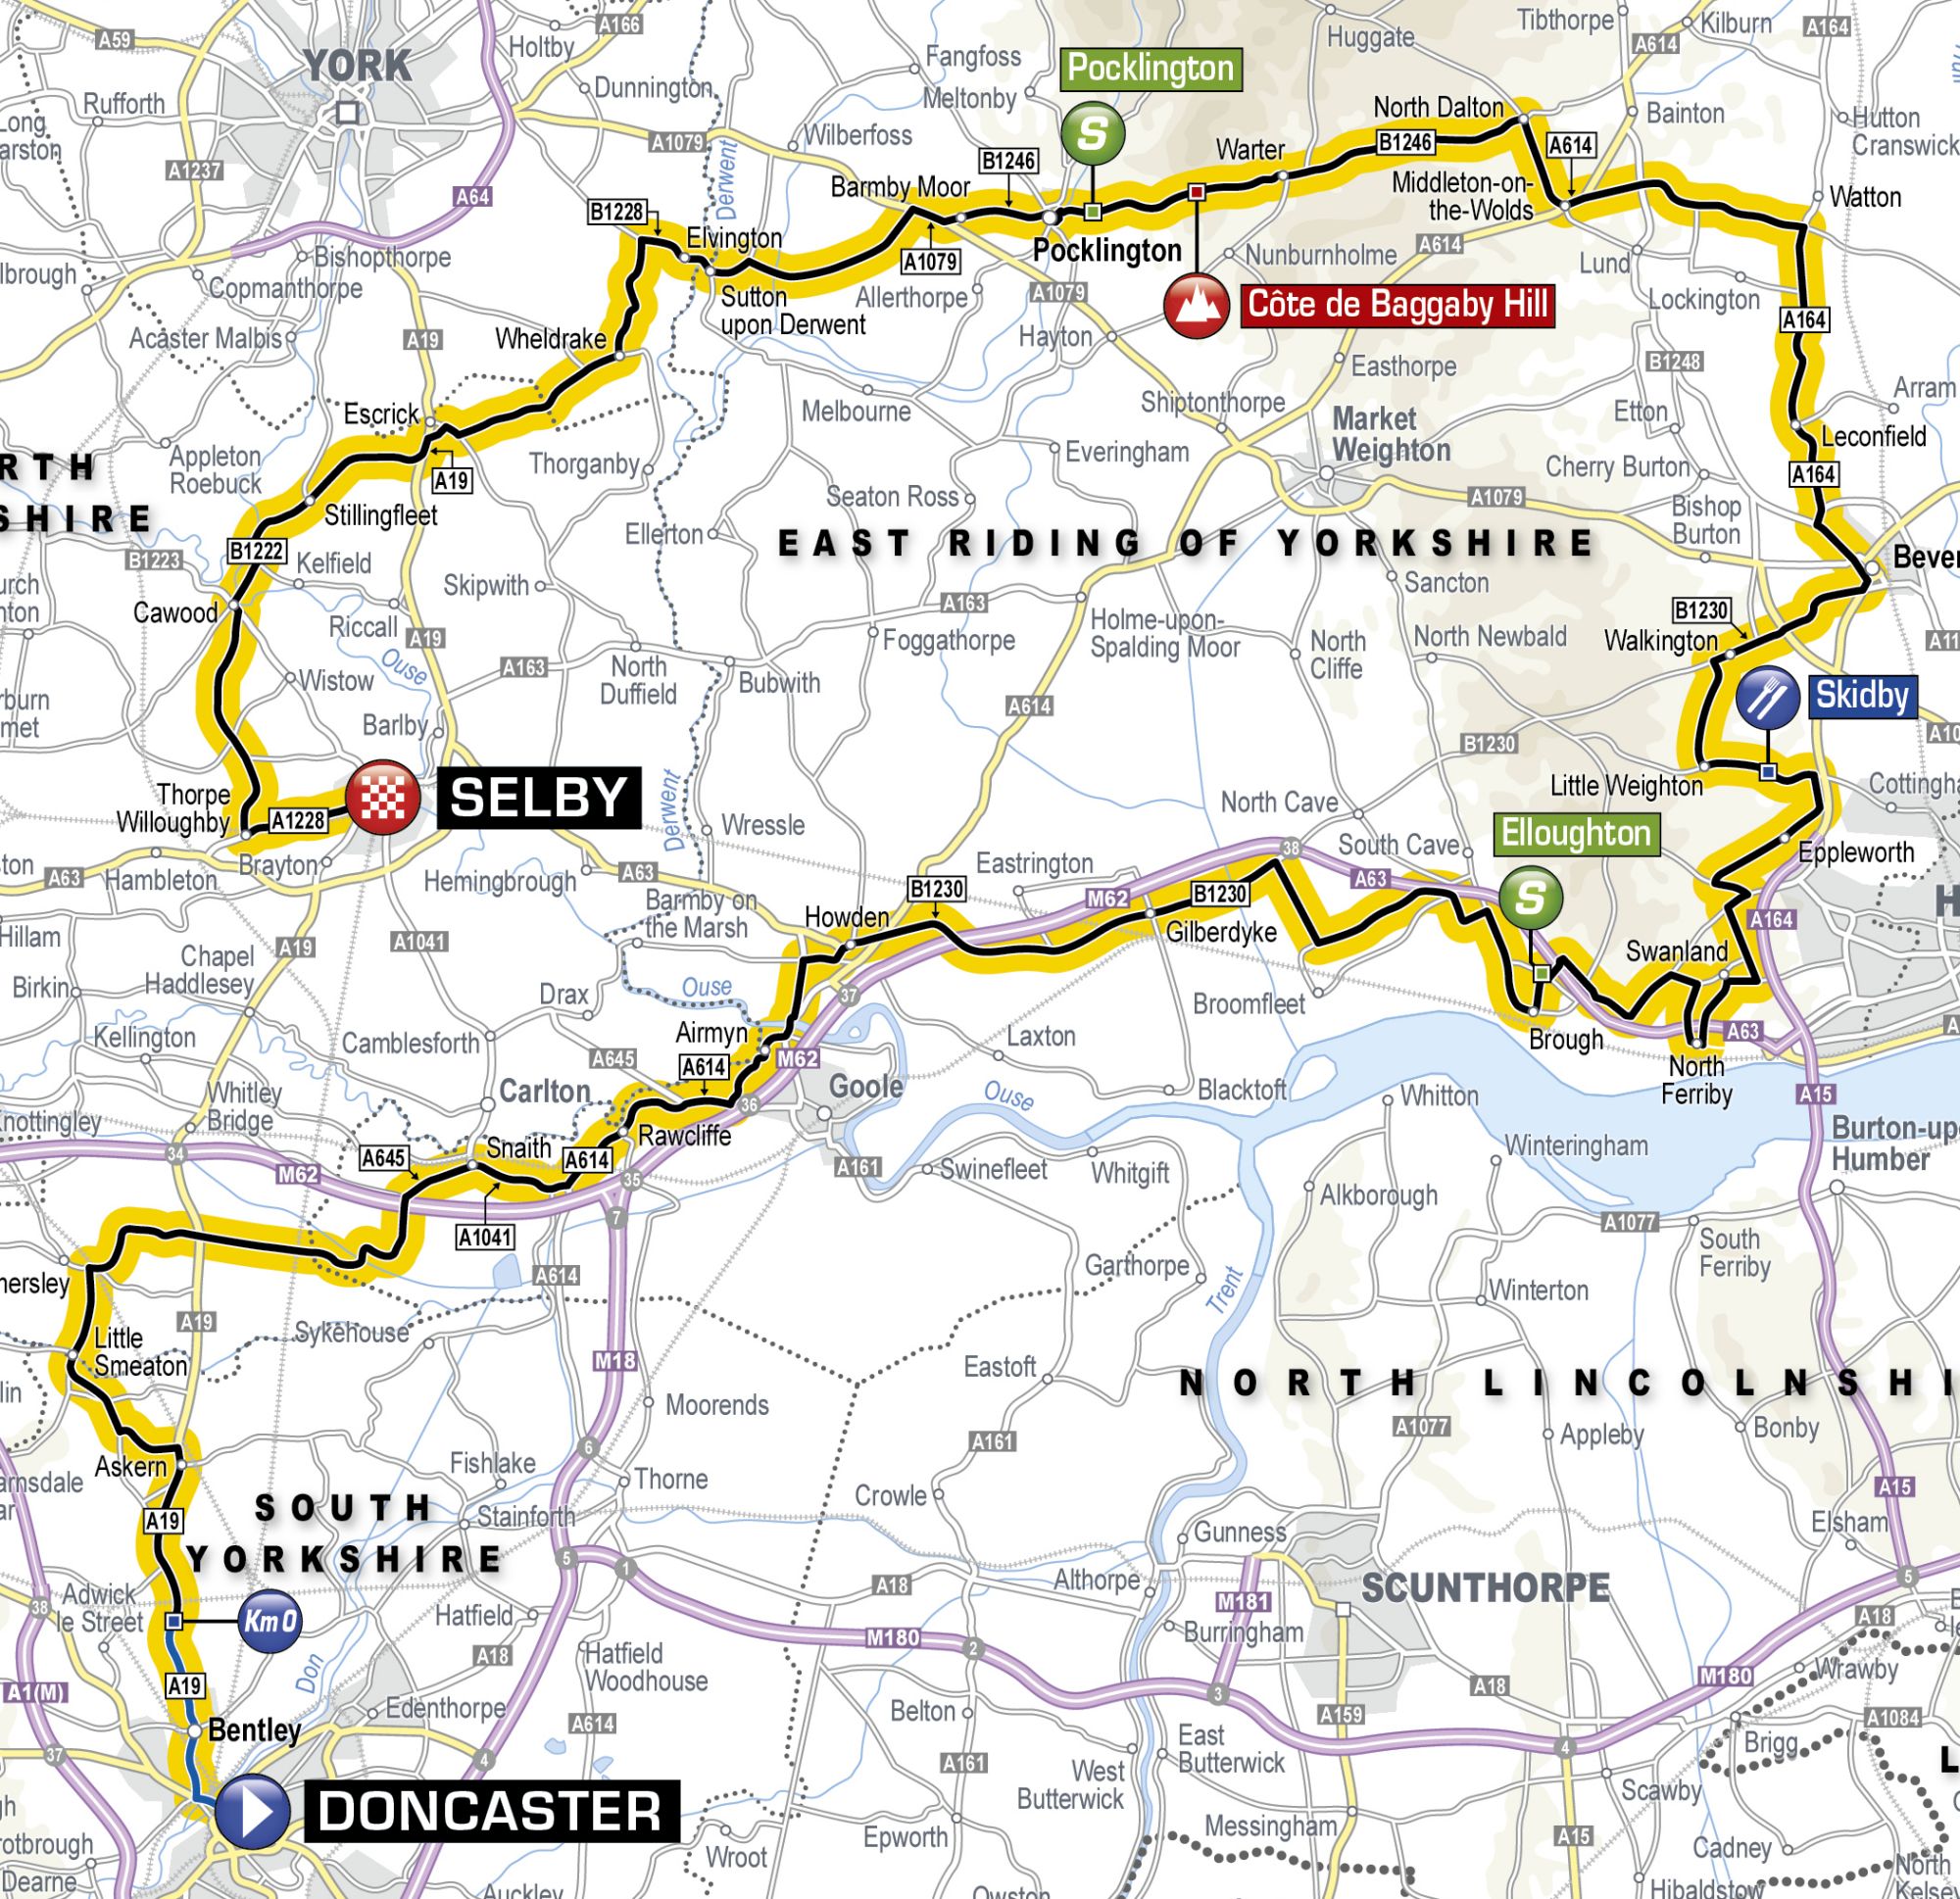 tour de france 2014 yorkshire stage 1 route map